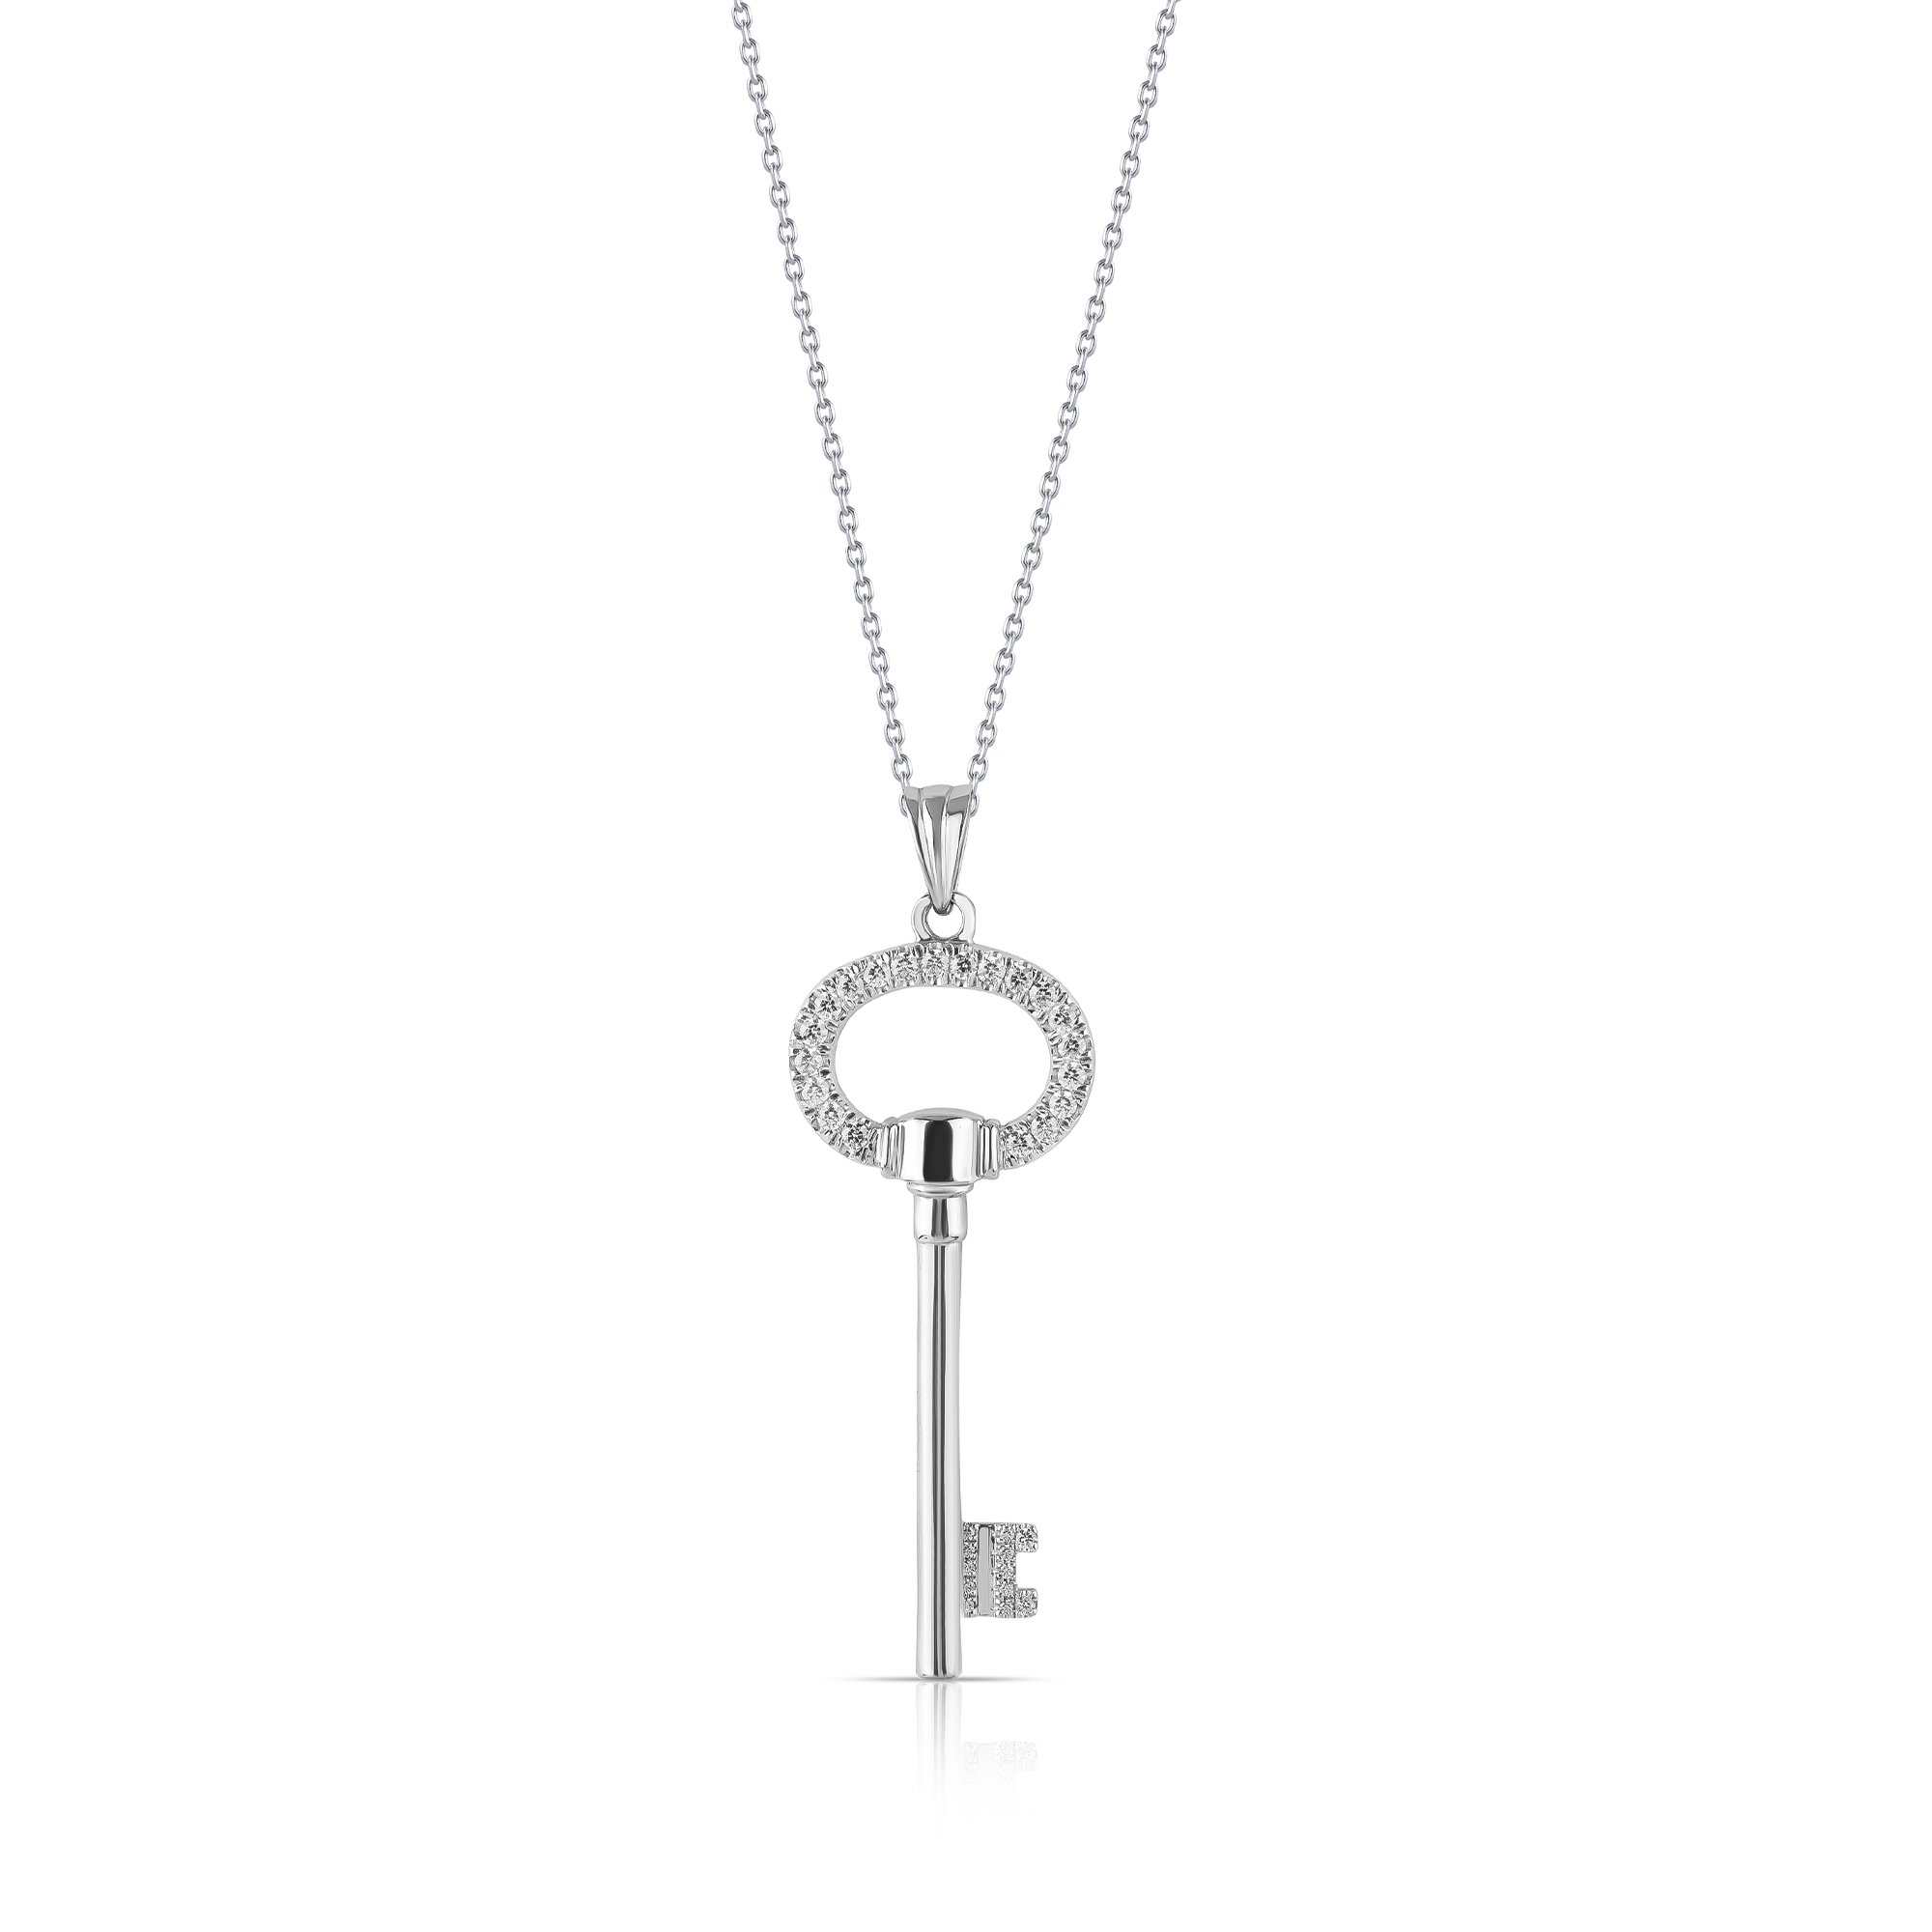 silver key pendant